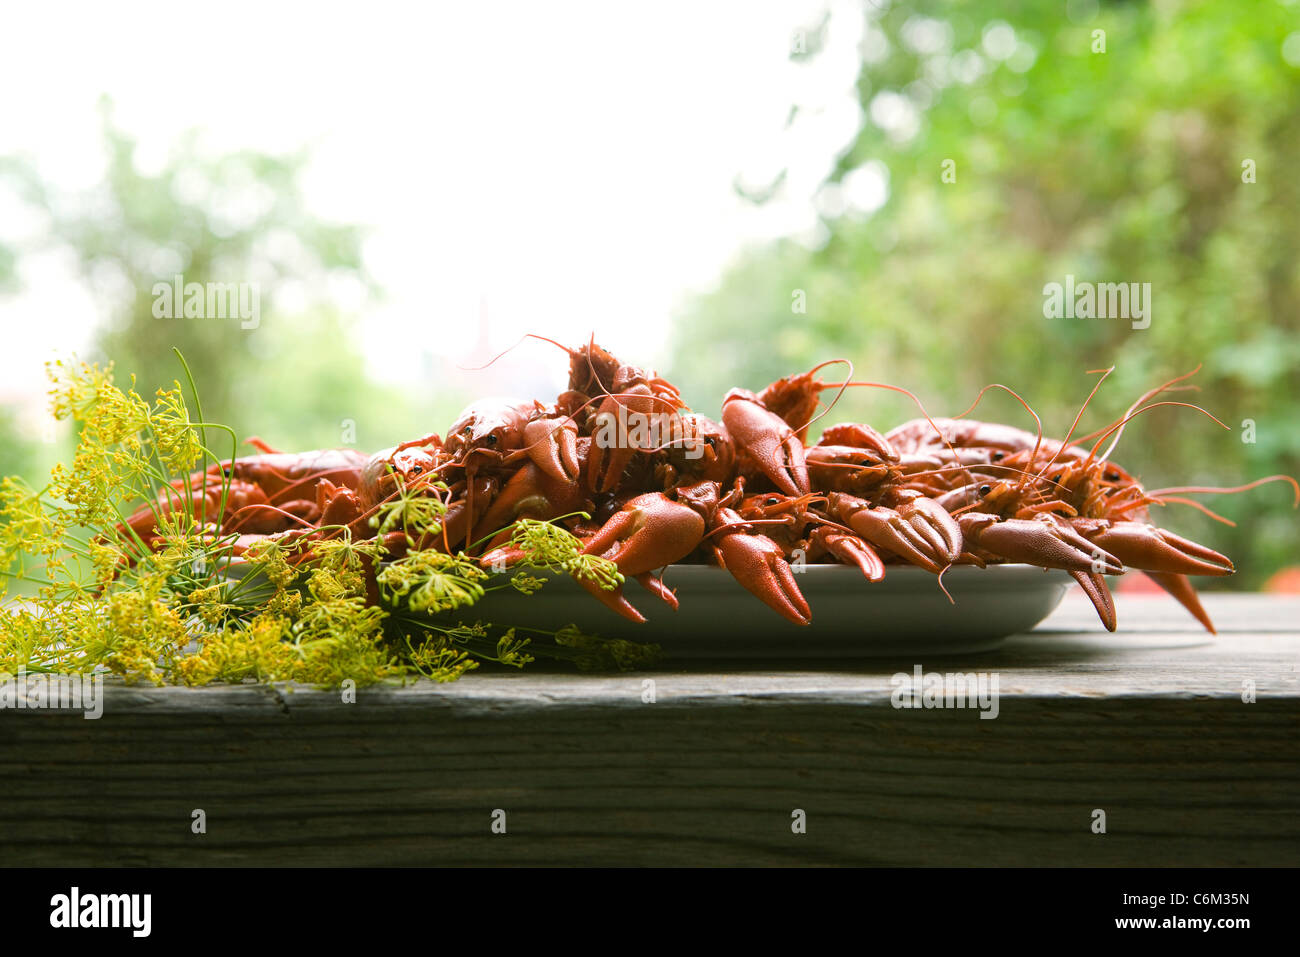 Aragosta bollita sul tavolo per esterno Foto Stock